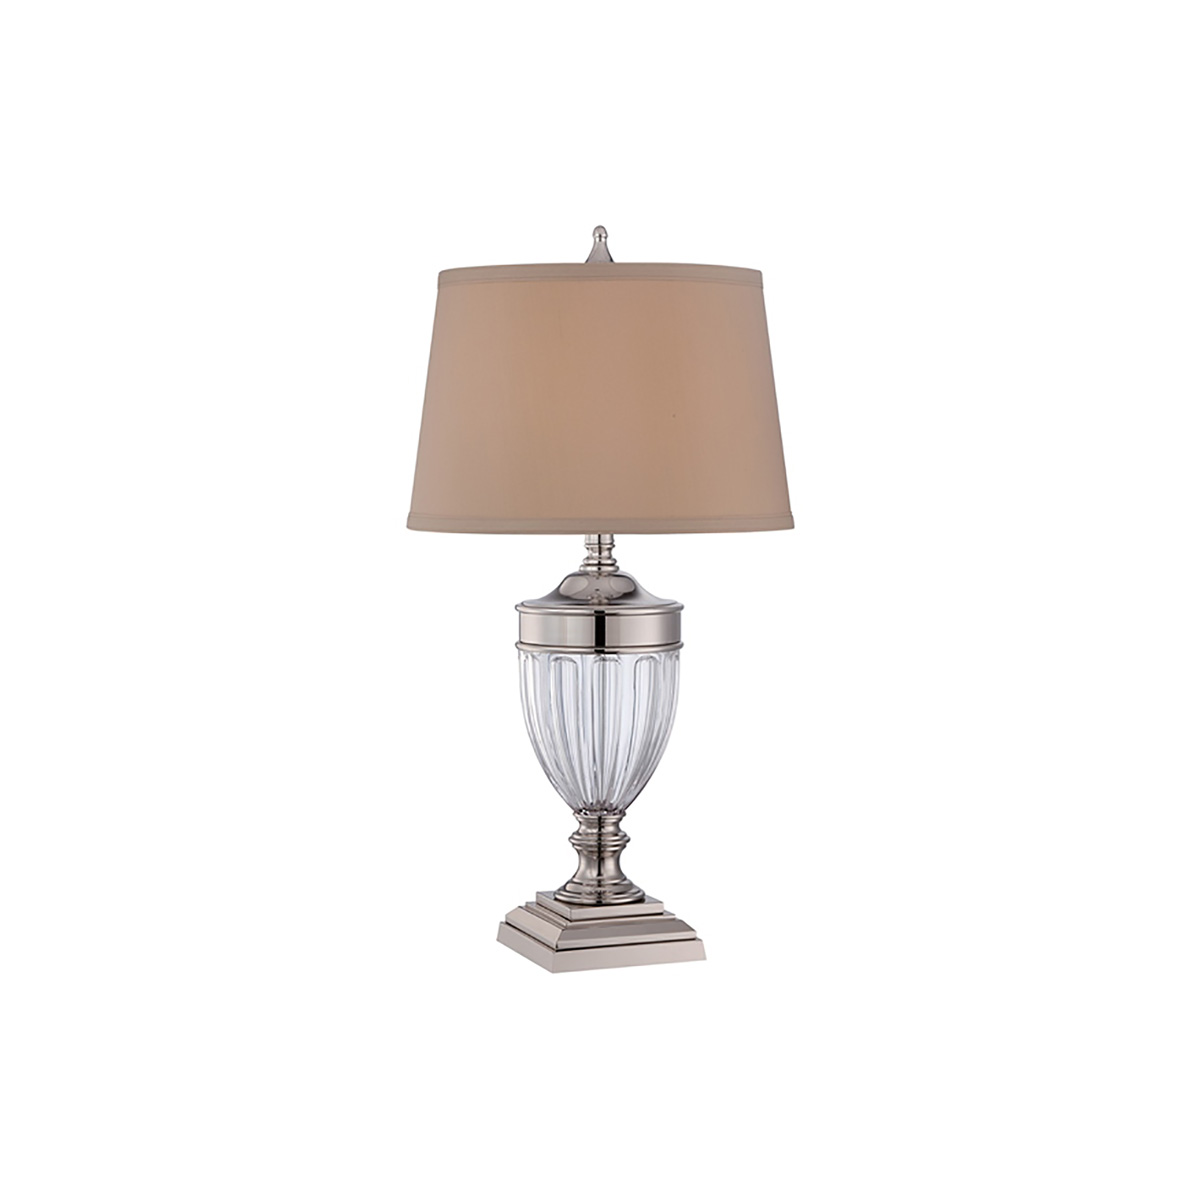 Настольная лампа QZ-DENNISON-PN, Настольные лампы Ар-деко/Классический | Никель полированный | Прихожая, спальня, гостиная, столовая.